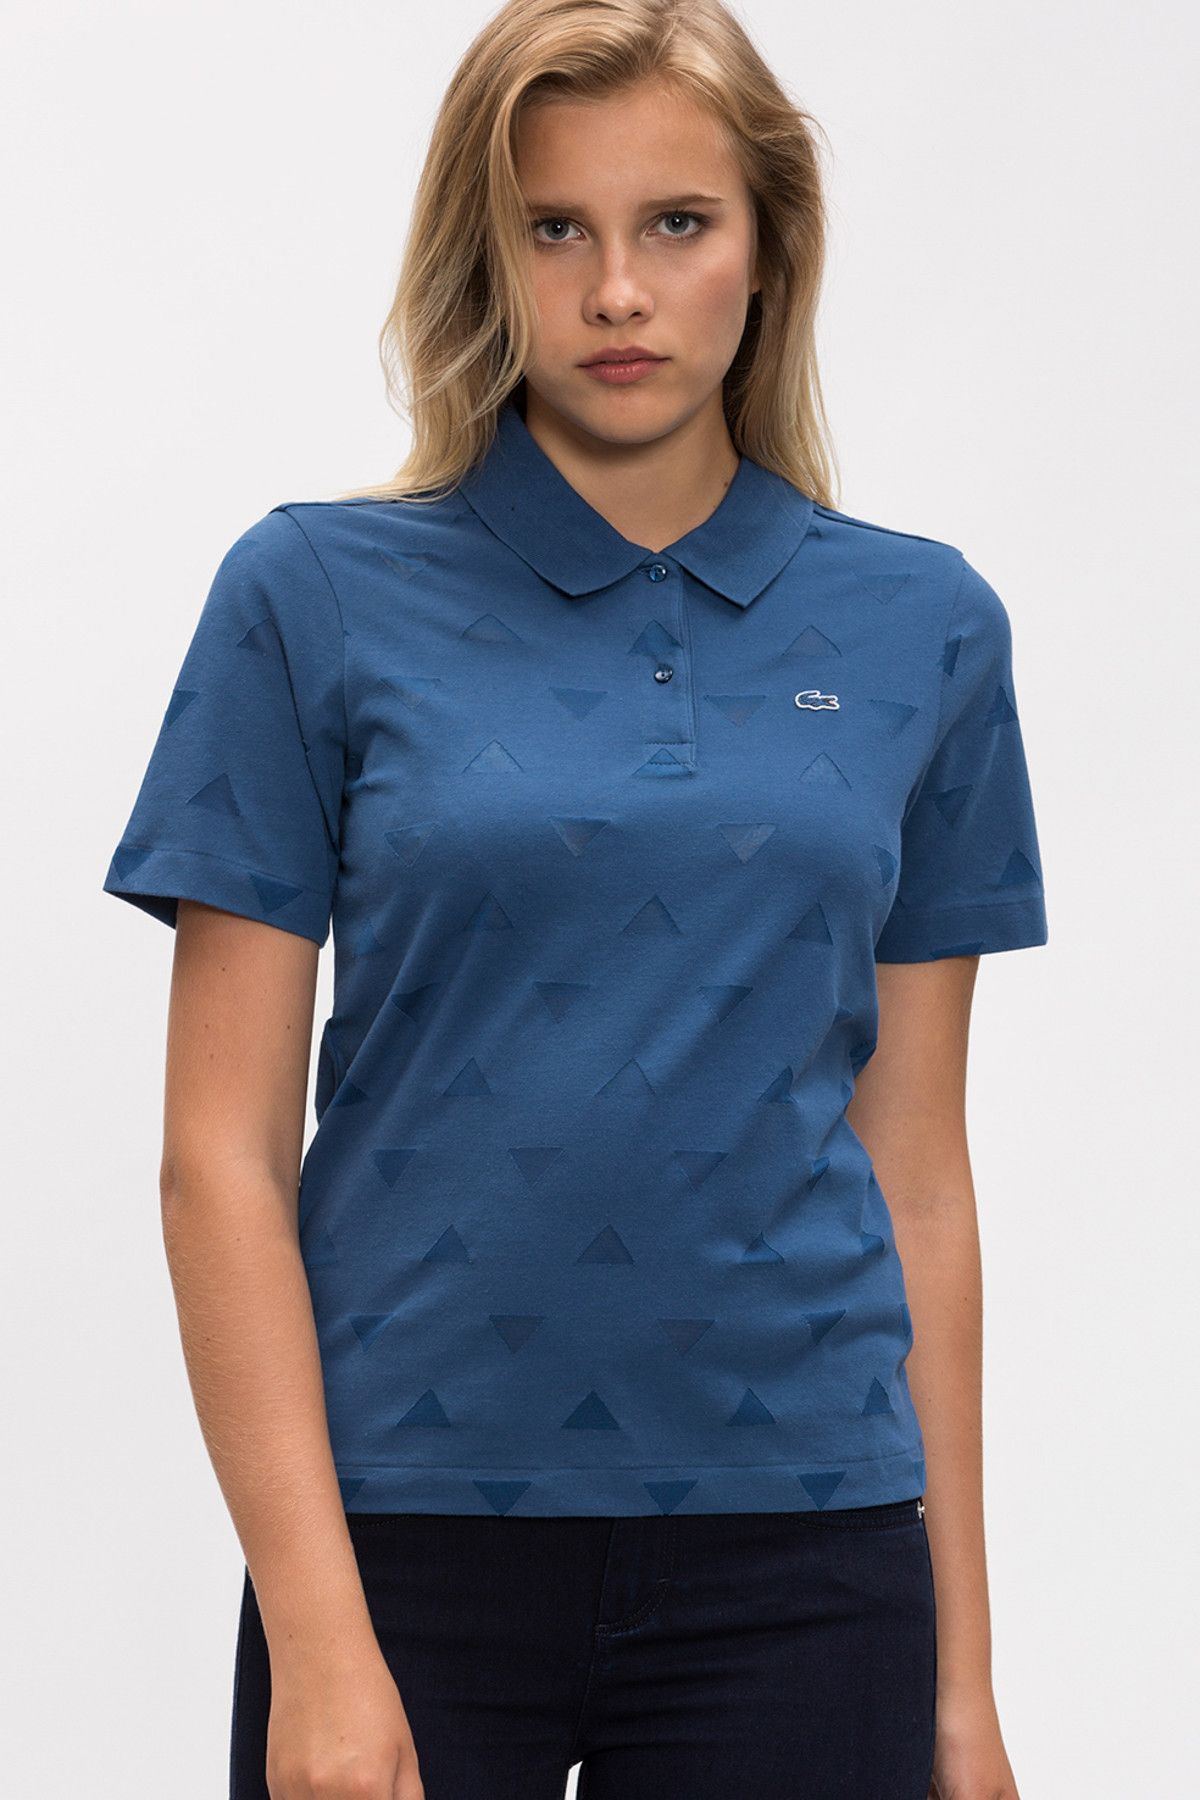 Lacoste Kadın Mavi Polo Yaka T-shirt DF1554